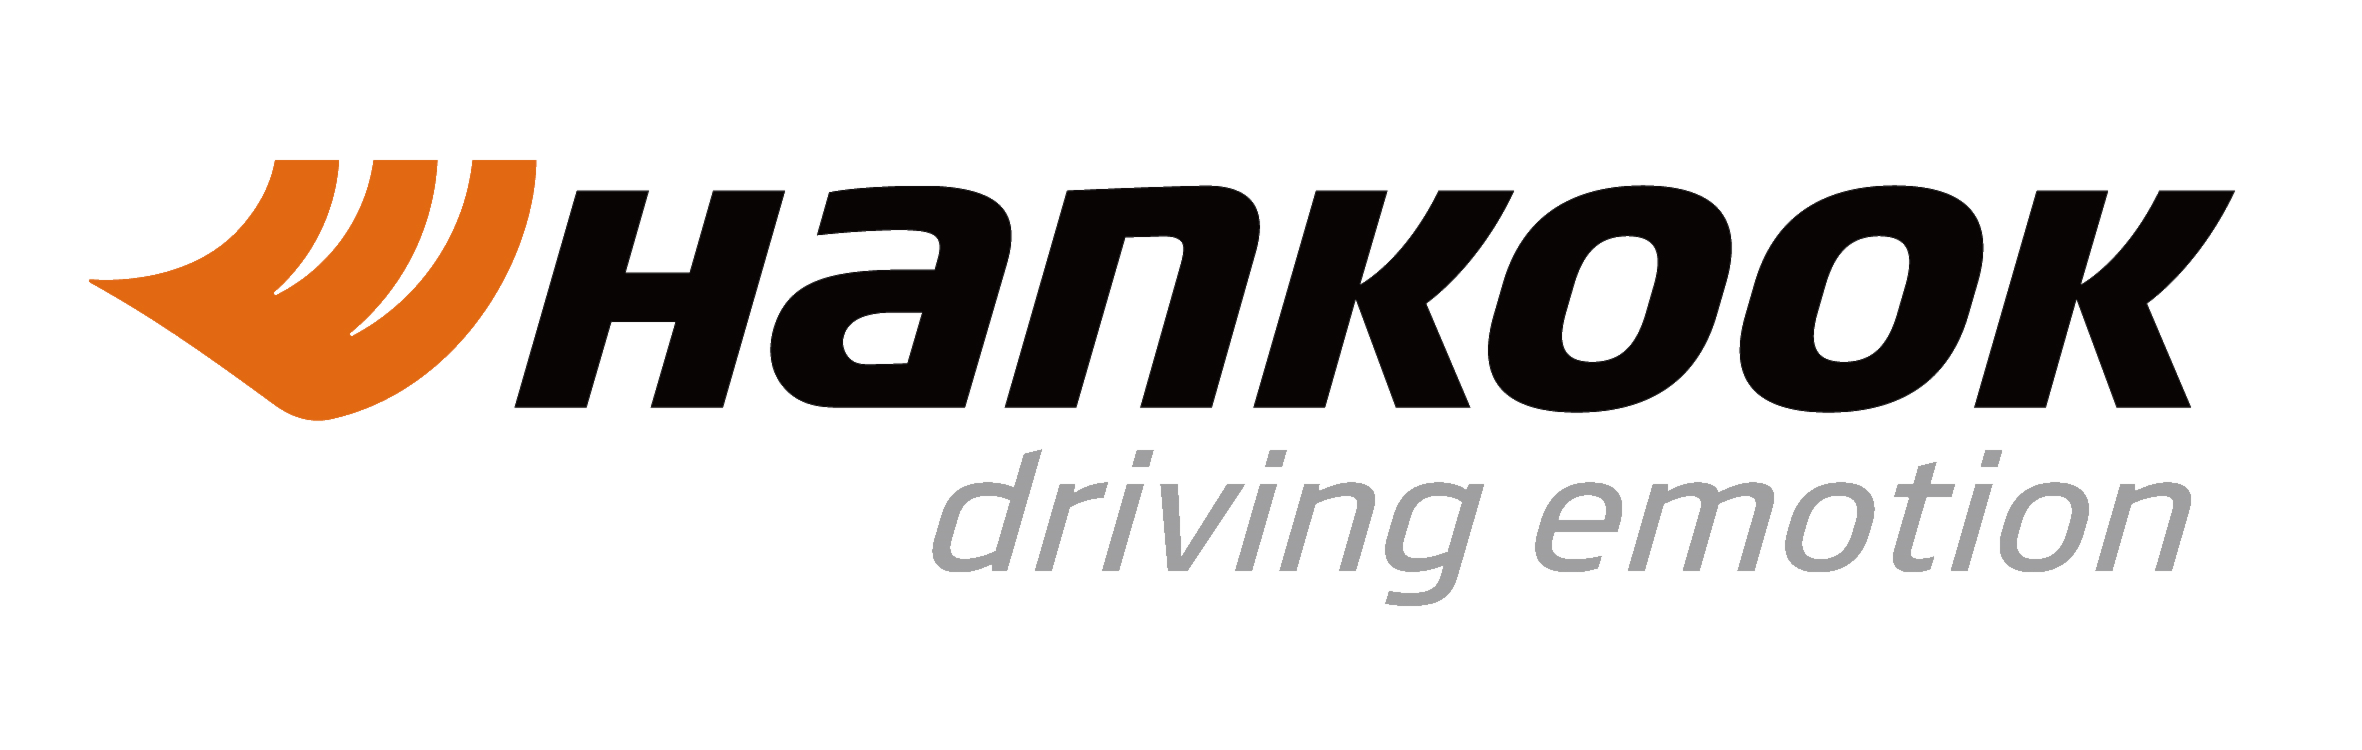 Hankook_logo_as_of_2019.png